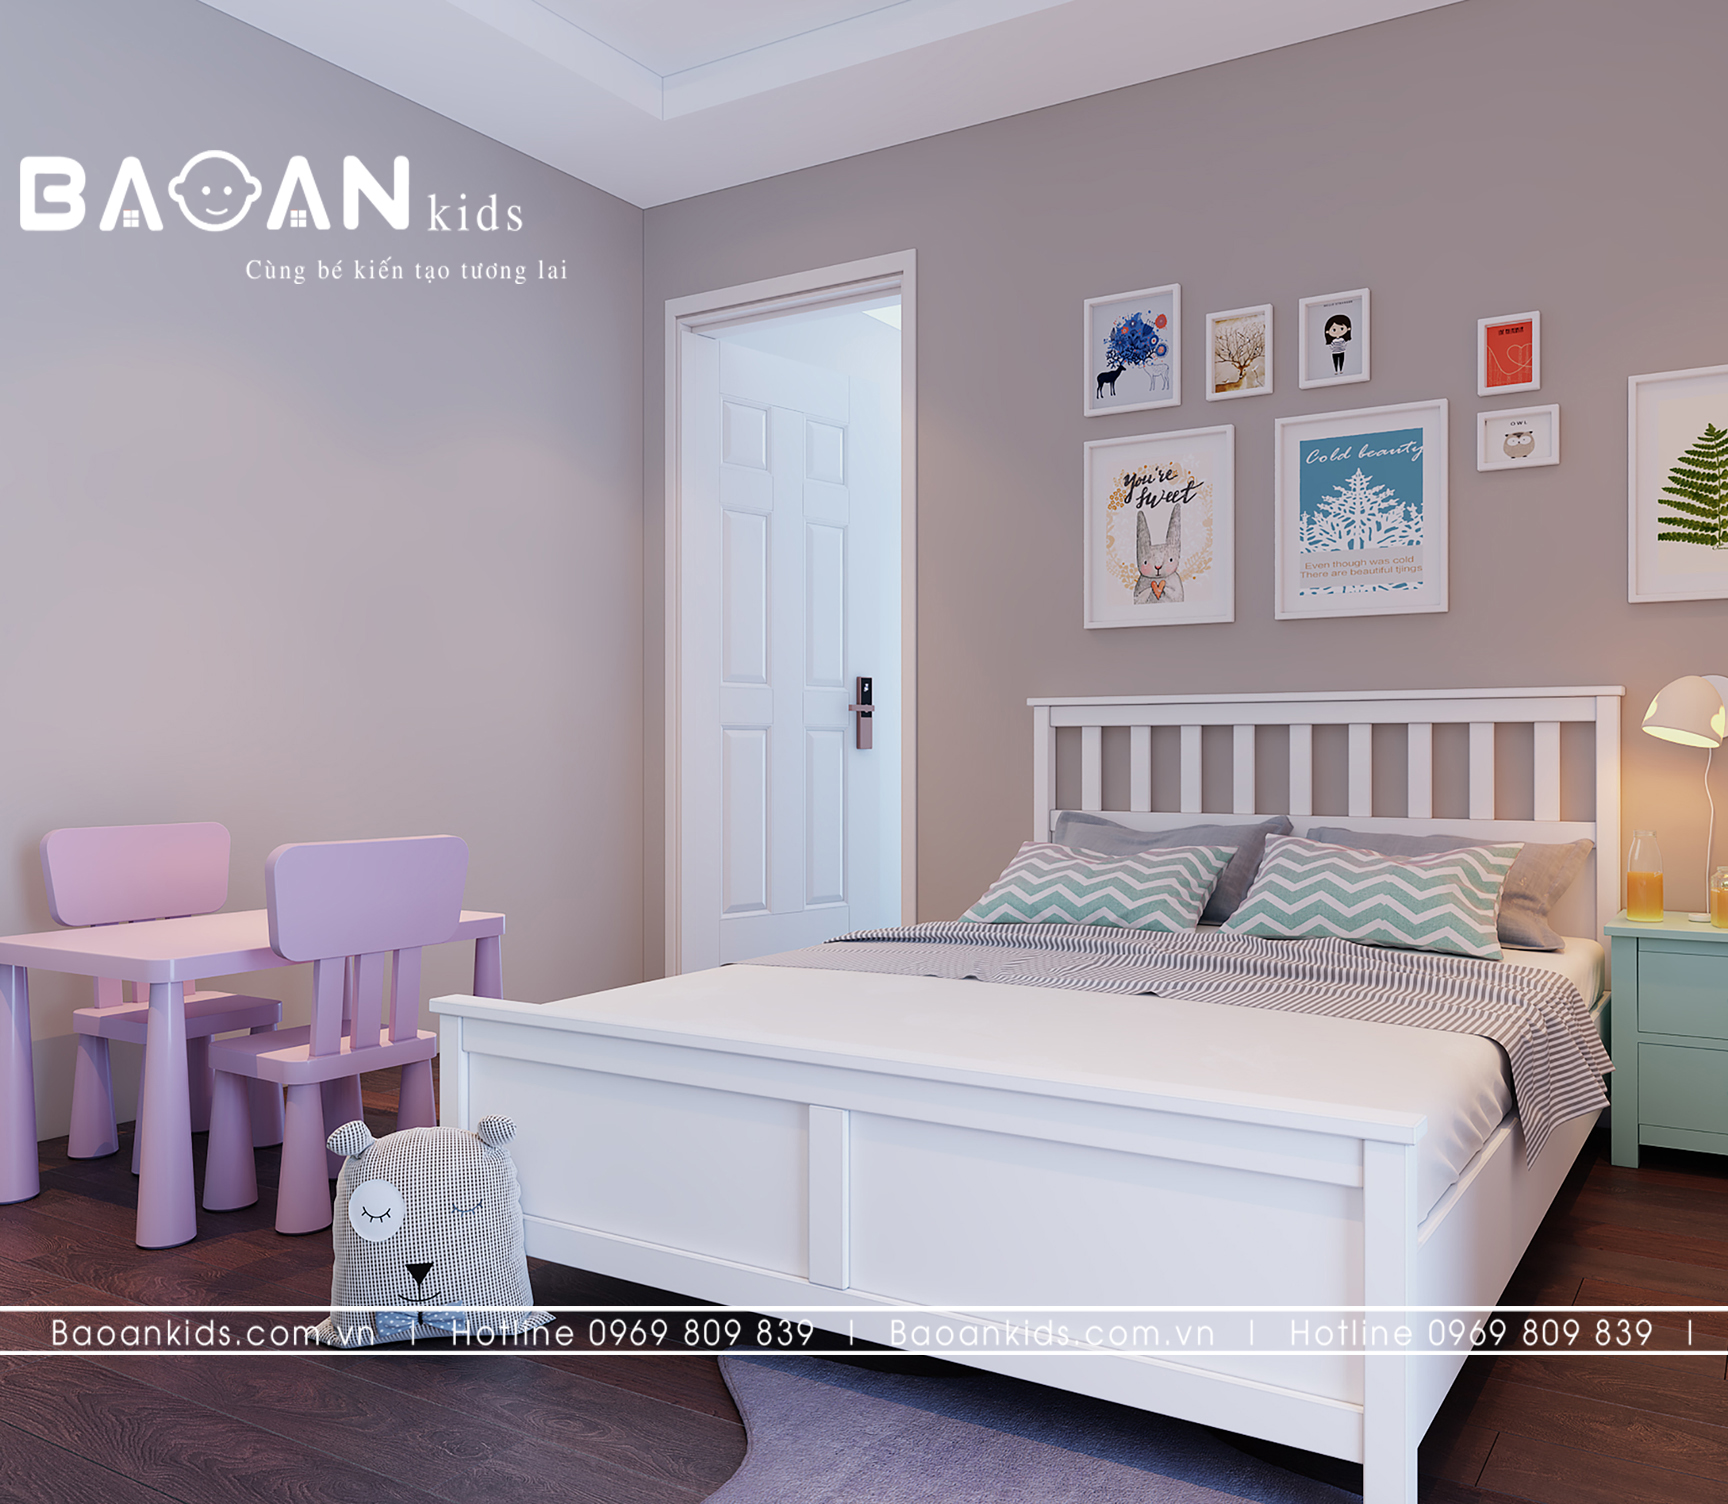 Giường ngủ trẻ em màu trắng 2024: Giường ngủ trẻ em màu trắng nổi bật với thiết kế đáng yêu, mang lại không gian ngủ đáng yêu và an toàn cho trẻ. Với vật liệu chất lượng cao và kiểu dáng hiện đại, sản phẩm này được yêu thích và tin tưởng sử dụng bởi các bậc phụ huynh. Xem hình ảnh chi tiết tại đây!